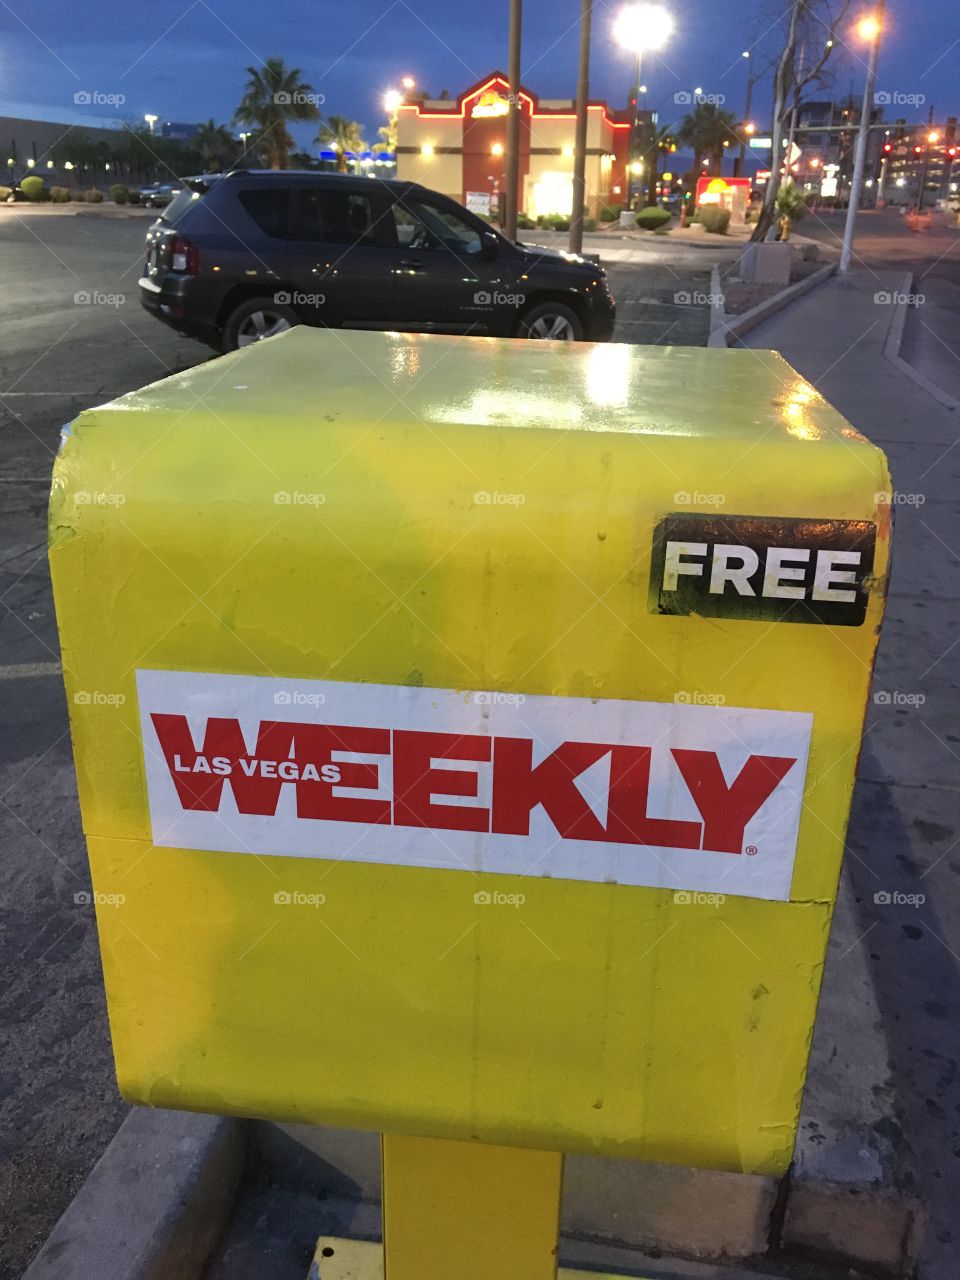 Las Vegas Weekly - Newspaper Stand